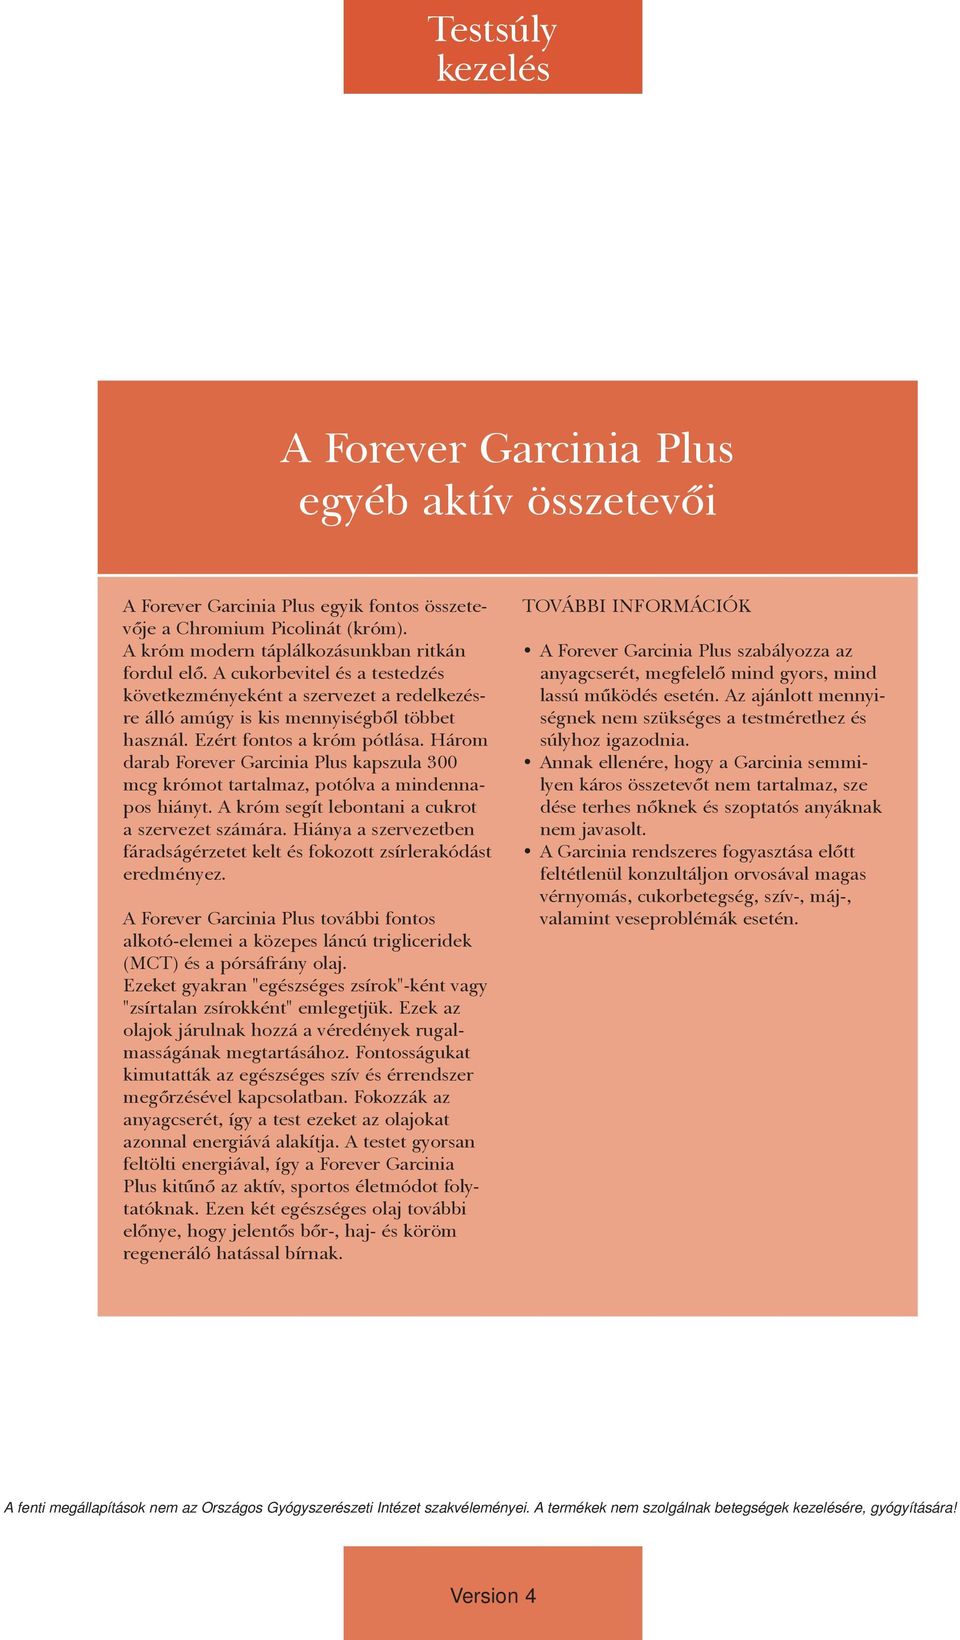 Három darab Forever Garcinia Plus kapszula 300 mcg krómot tartalmaz, potólva a mindennapos hiányt. A króm segít lebontani a cukrot a szervezet számára.